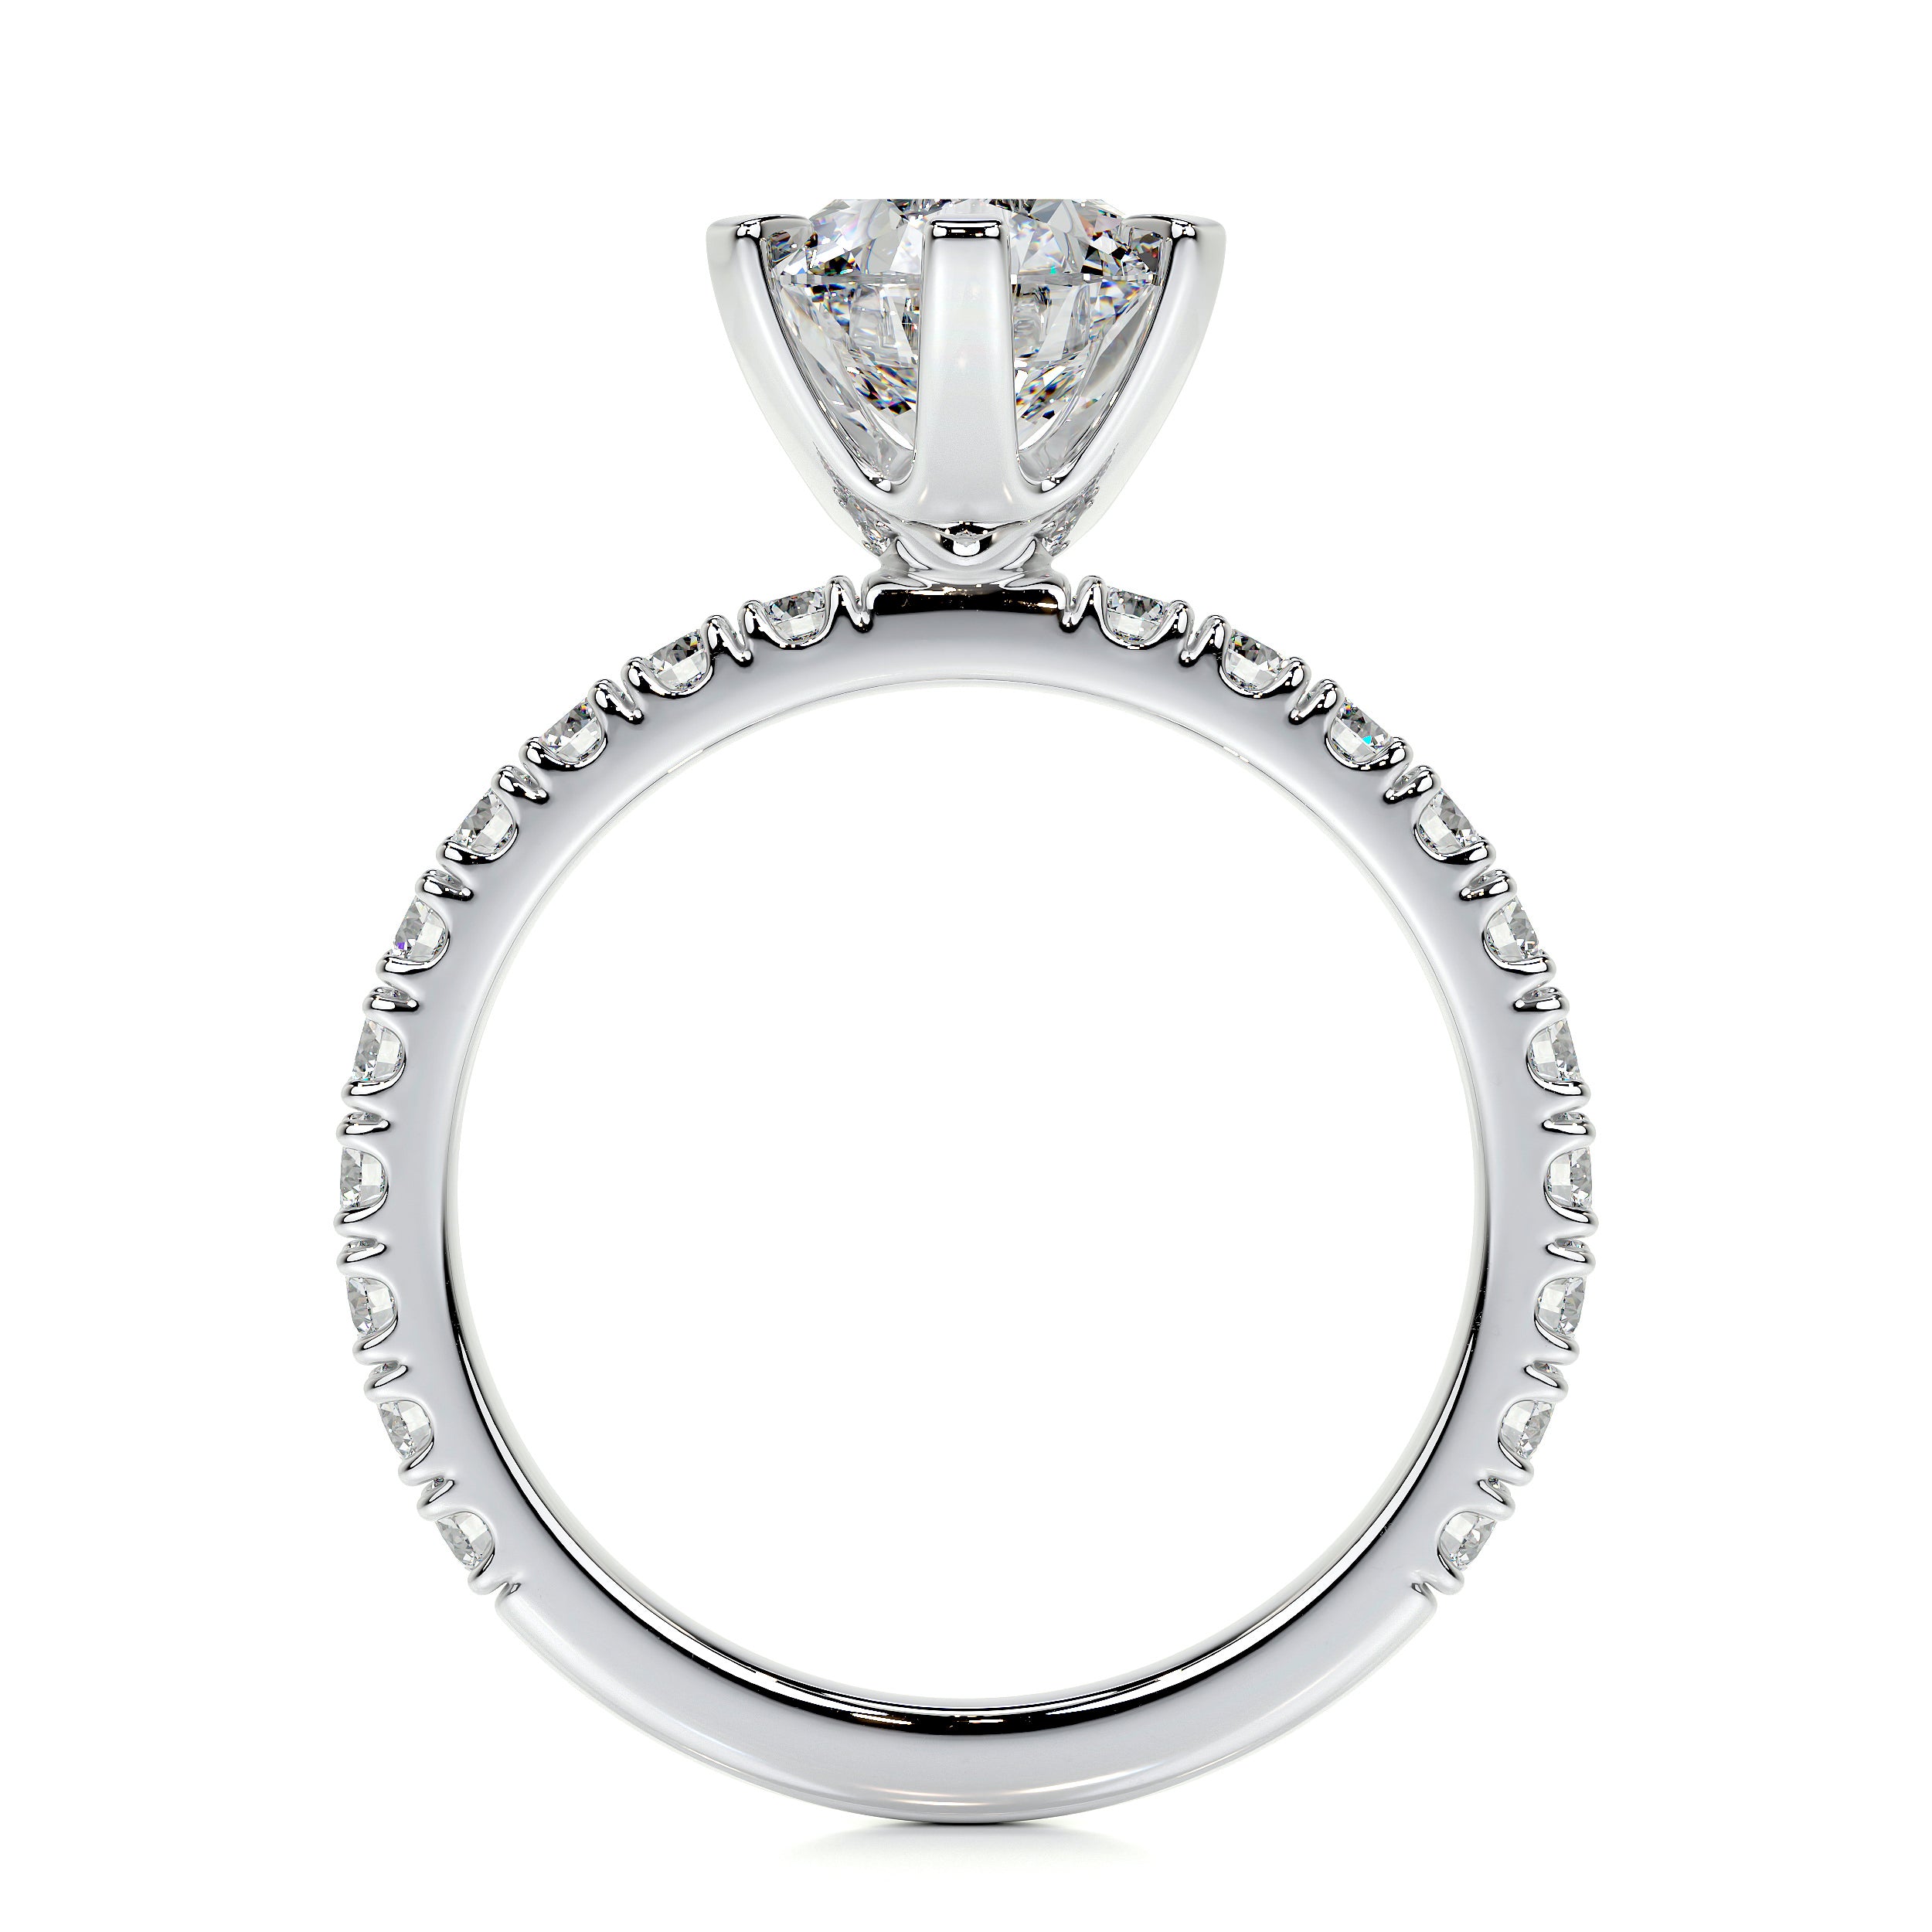 Veronica Lab Grown Diamond Ring   (2 Carat) -14K White Gold